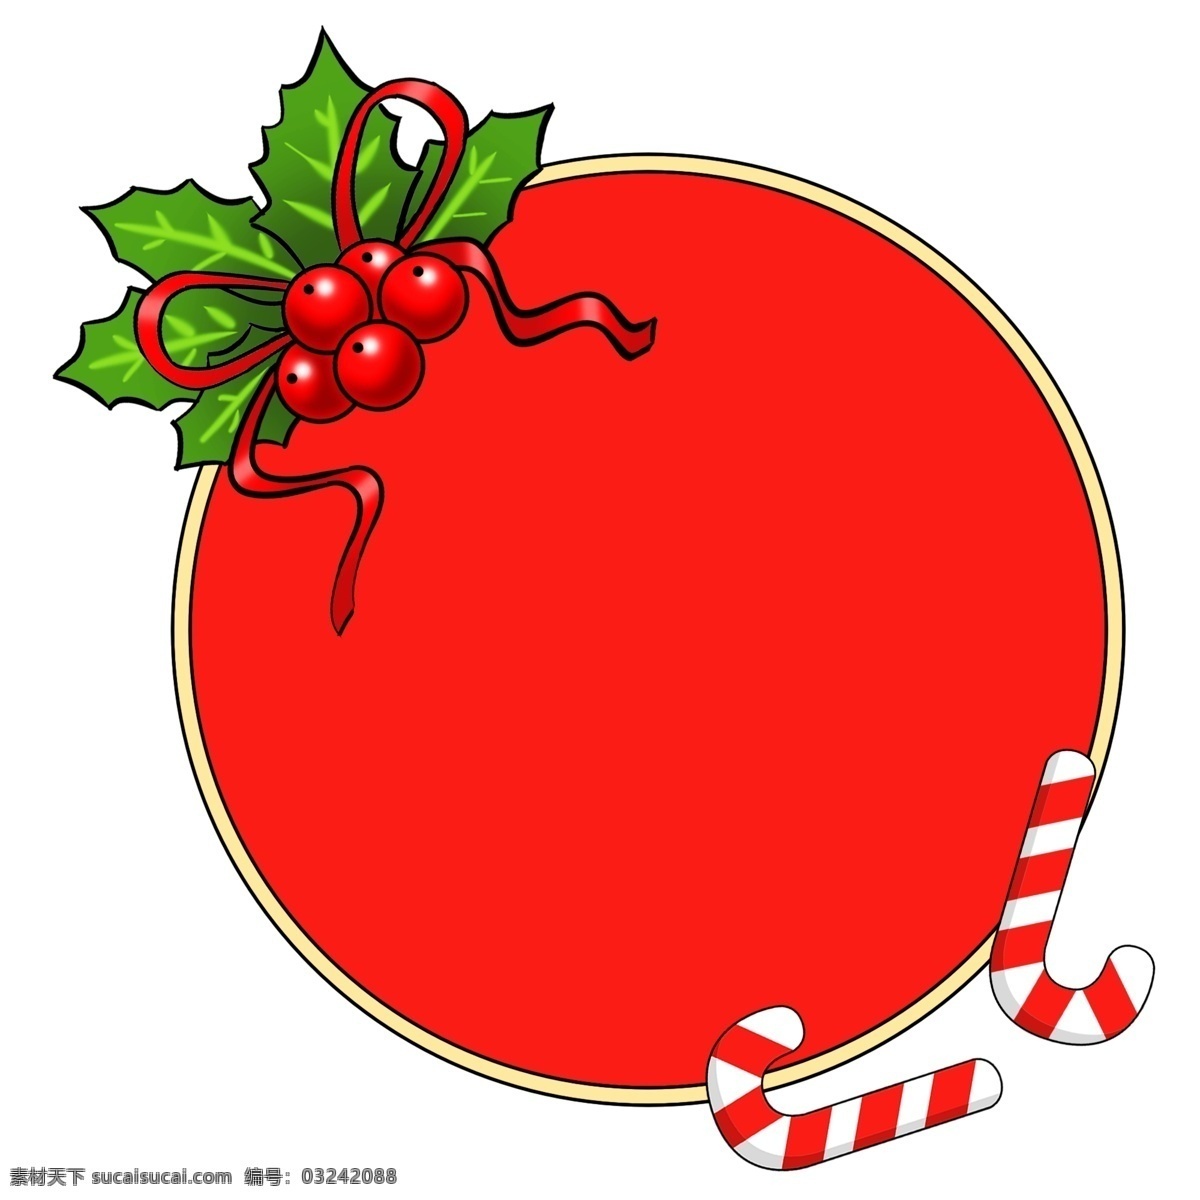 圆形 圣诞 礼物 边框 插画 圣诞节 圣诞礼物 绿叶 拐杖 圣诞节边框 黄色边框 圆形边框 红色水果 手绘